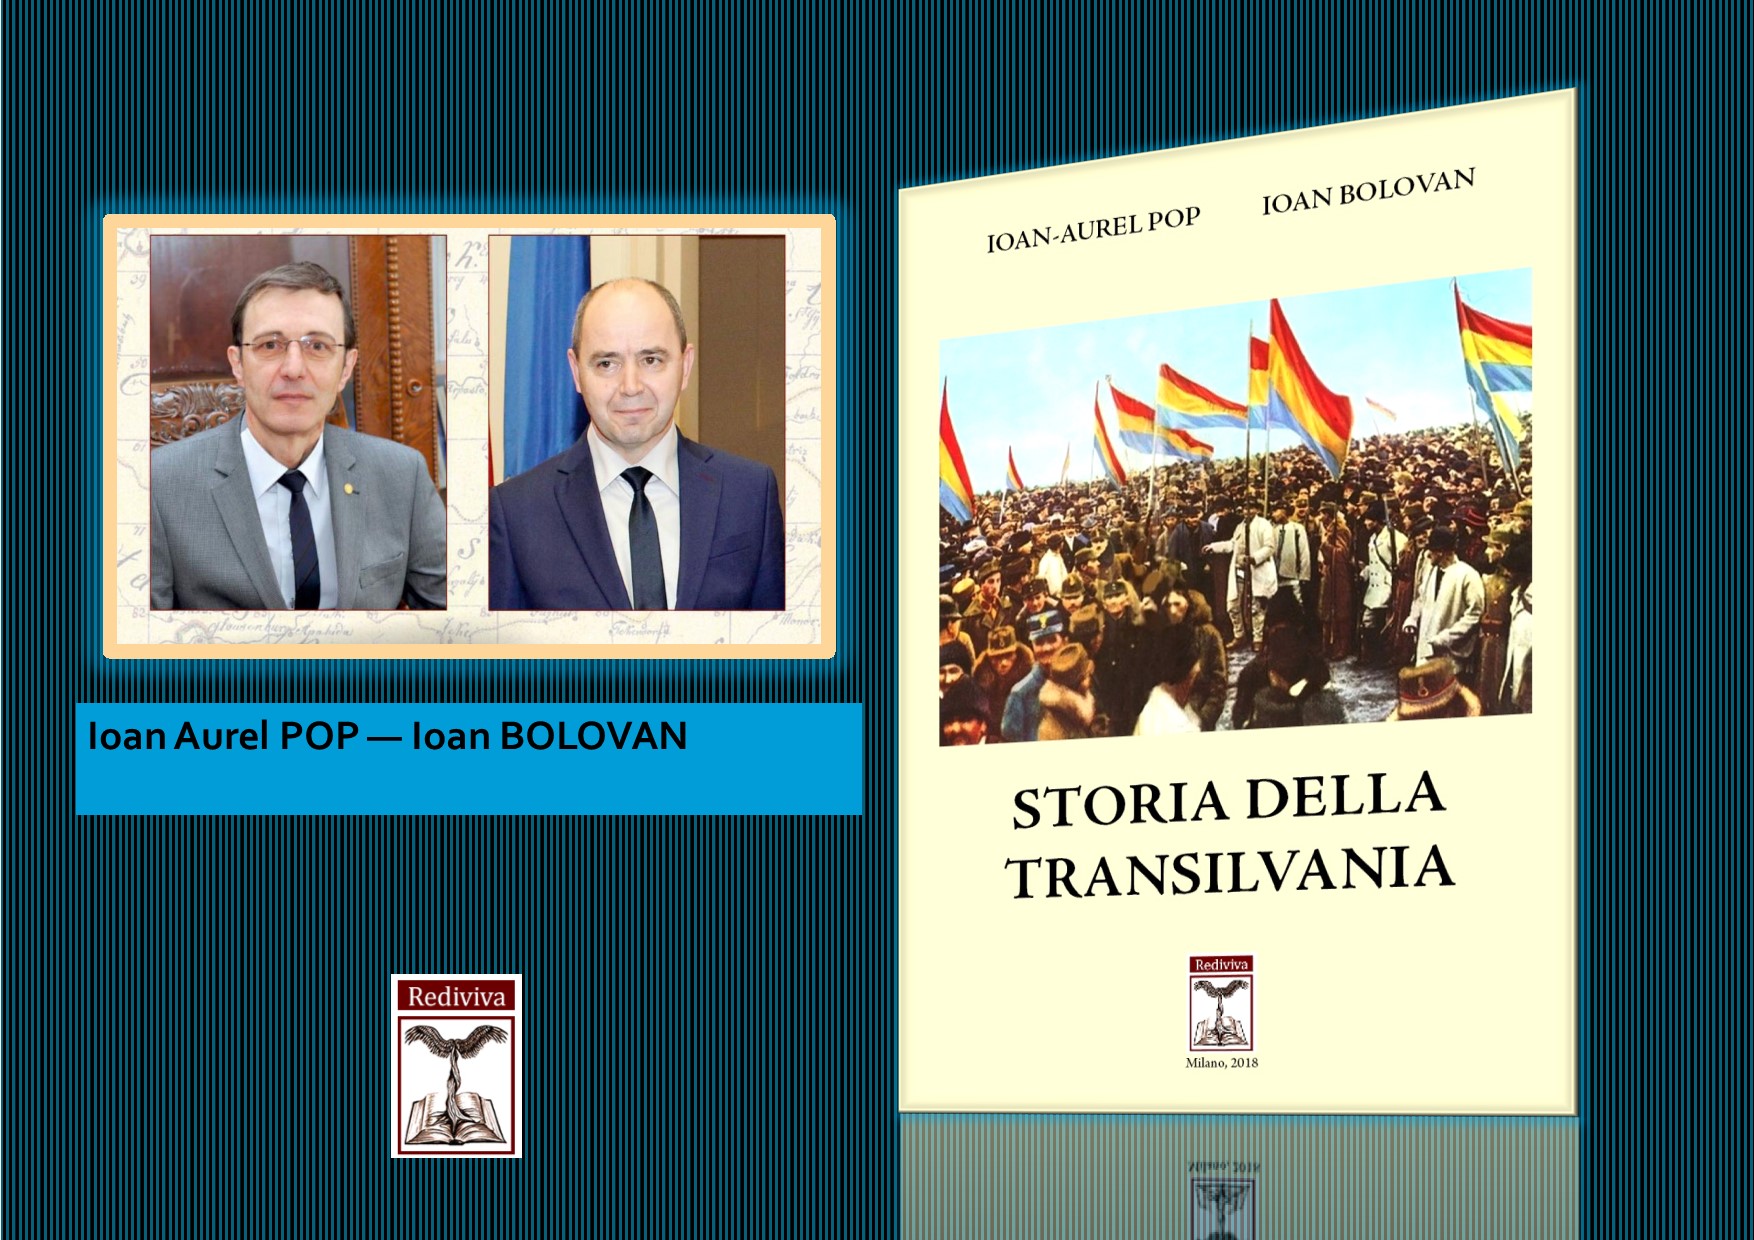 Il volume “Storia della Transilvania” di Ioan Aurel Pop e Ioan Bolovan ed. Rediviva, arriva nelle biblioteche universitarie e i dipartimenti di storia